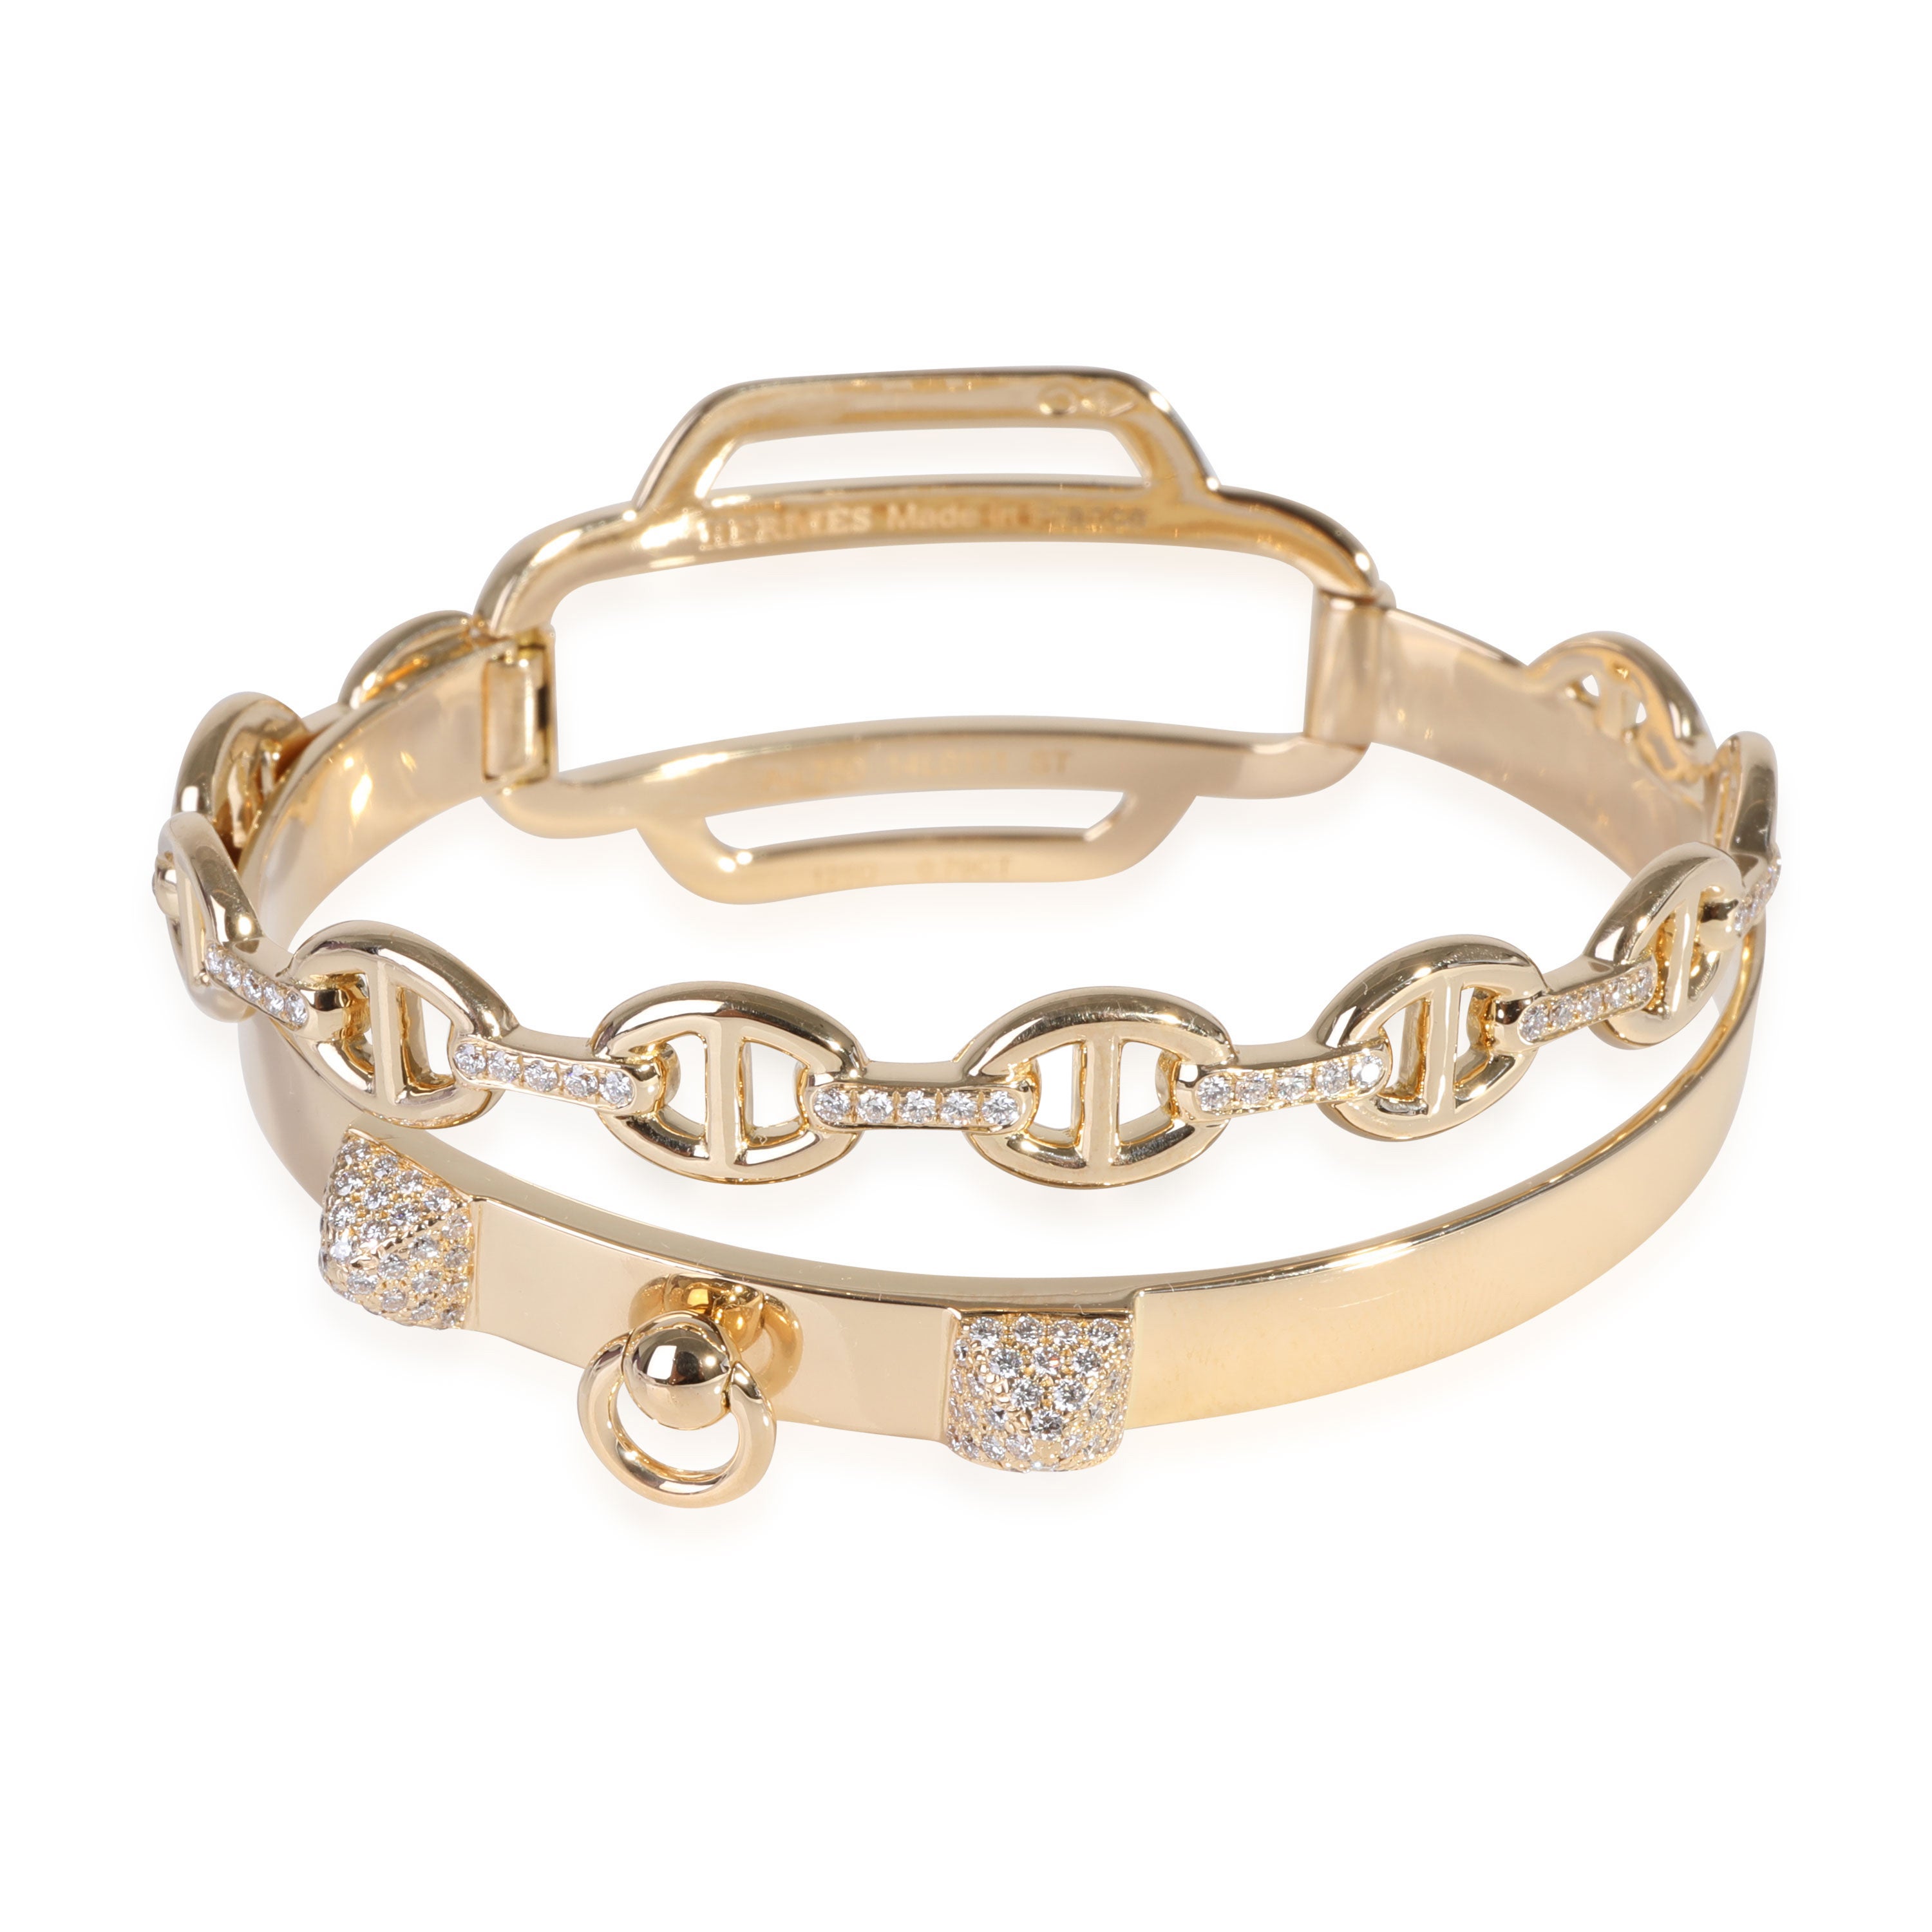 Hermès Collier De Chien Diamond Bracelet in 18k Yellow Gold 0.79 CTW For Sale